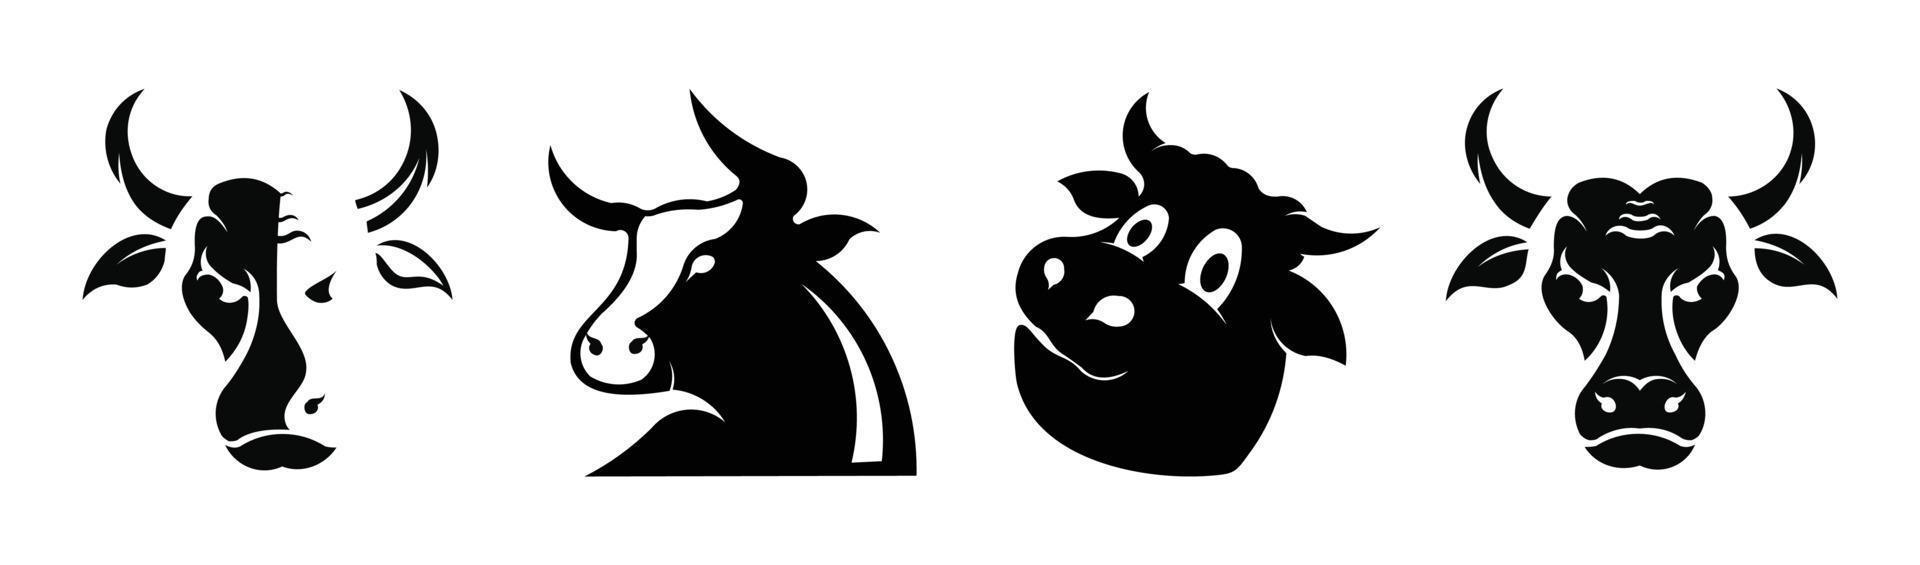 Kuh set schwarze Silhouette auf weißem Hintergrund. Stier- und Kuhsilhouette setzen Vektortiersymbole vektor